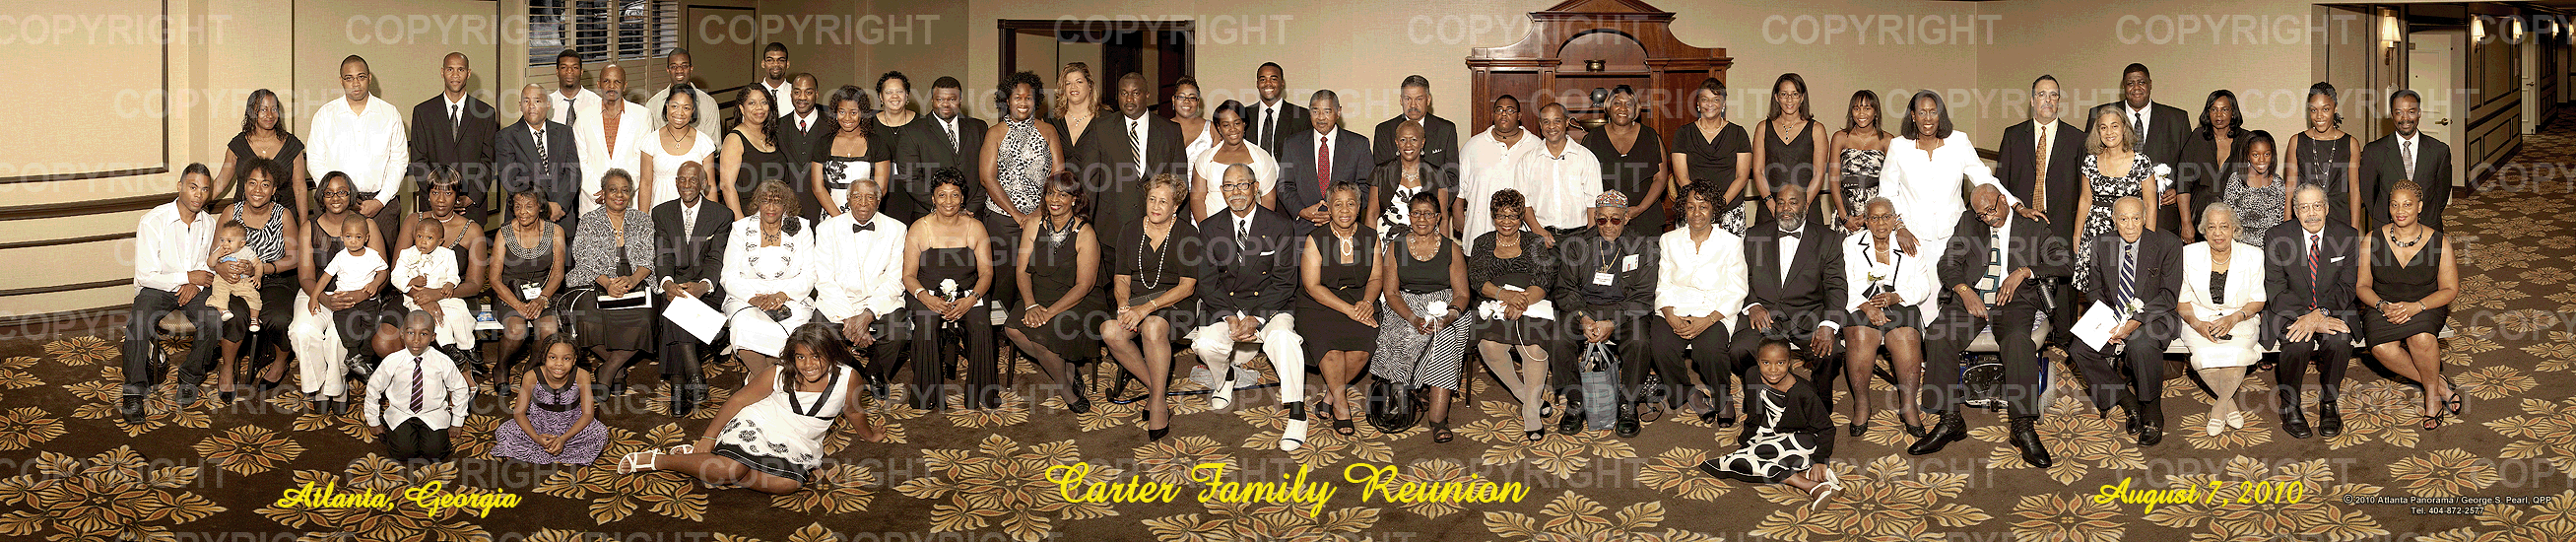 Carter_Family_Reunion_Photograph